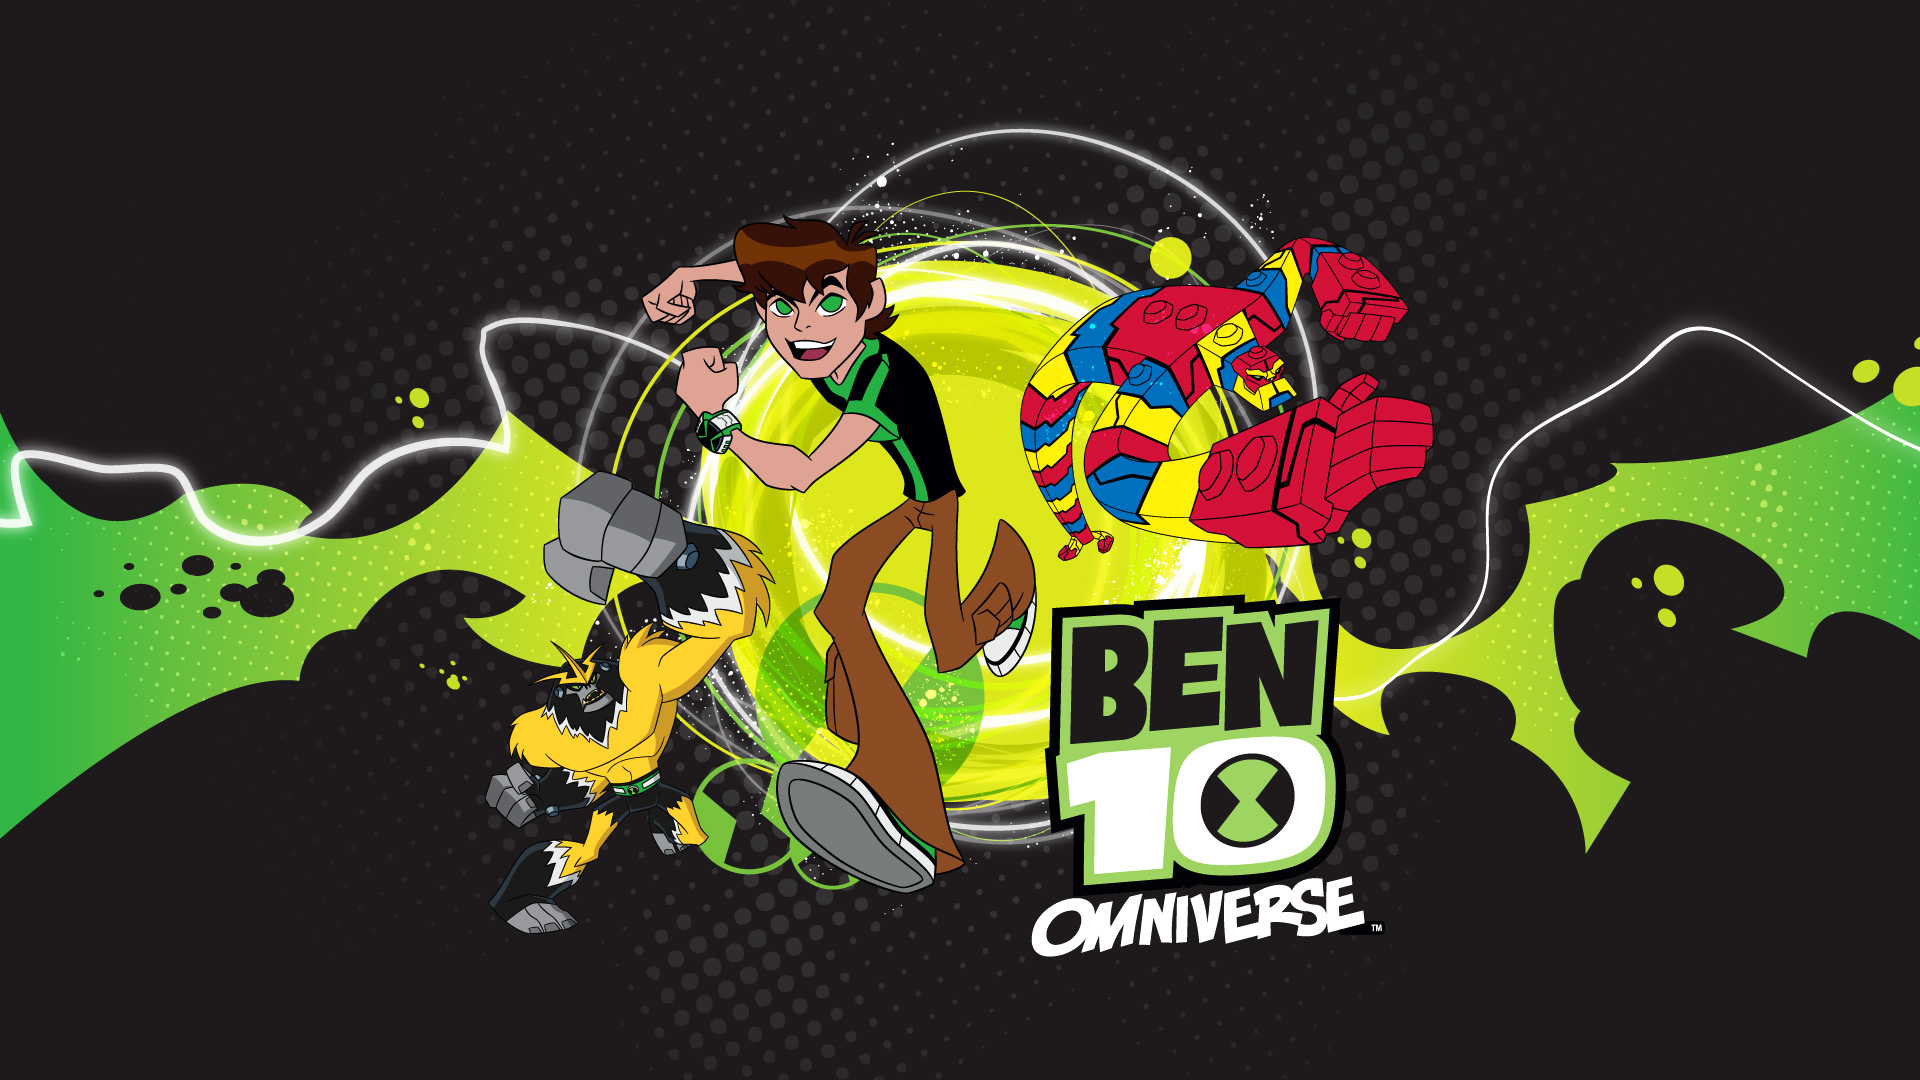 Ben 10 Omniverse 2 Announced